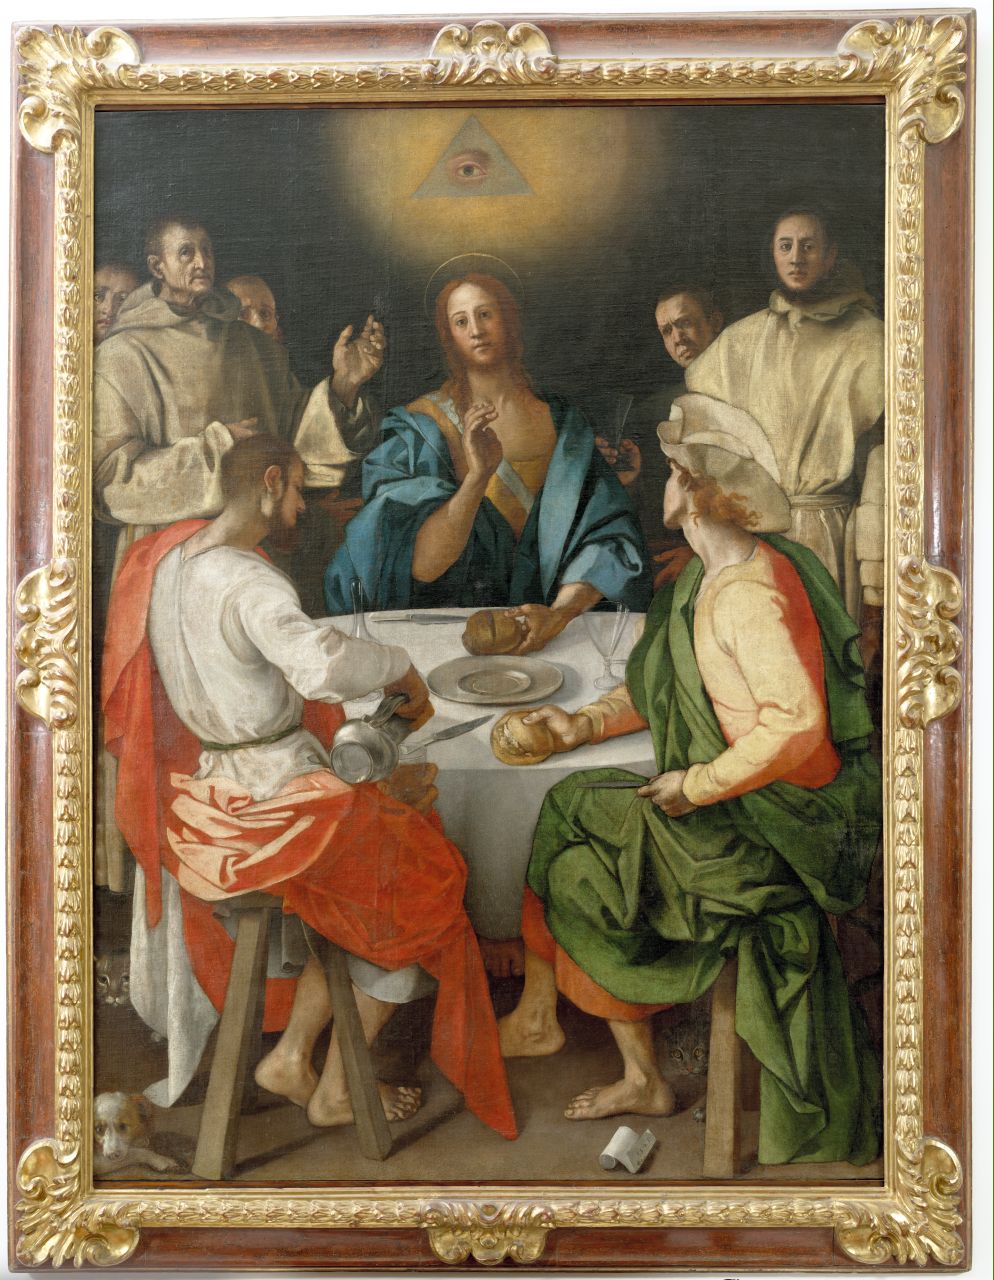 cena in Emmaus (dipinto) di Carucci Jacopo detto Pontormo (sec. XVI)